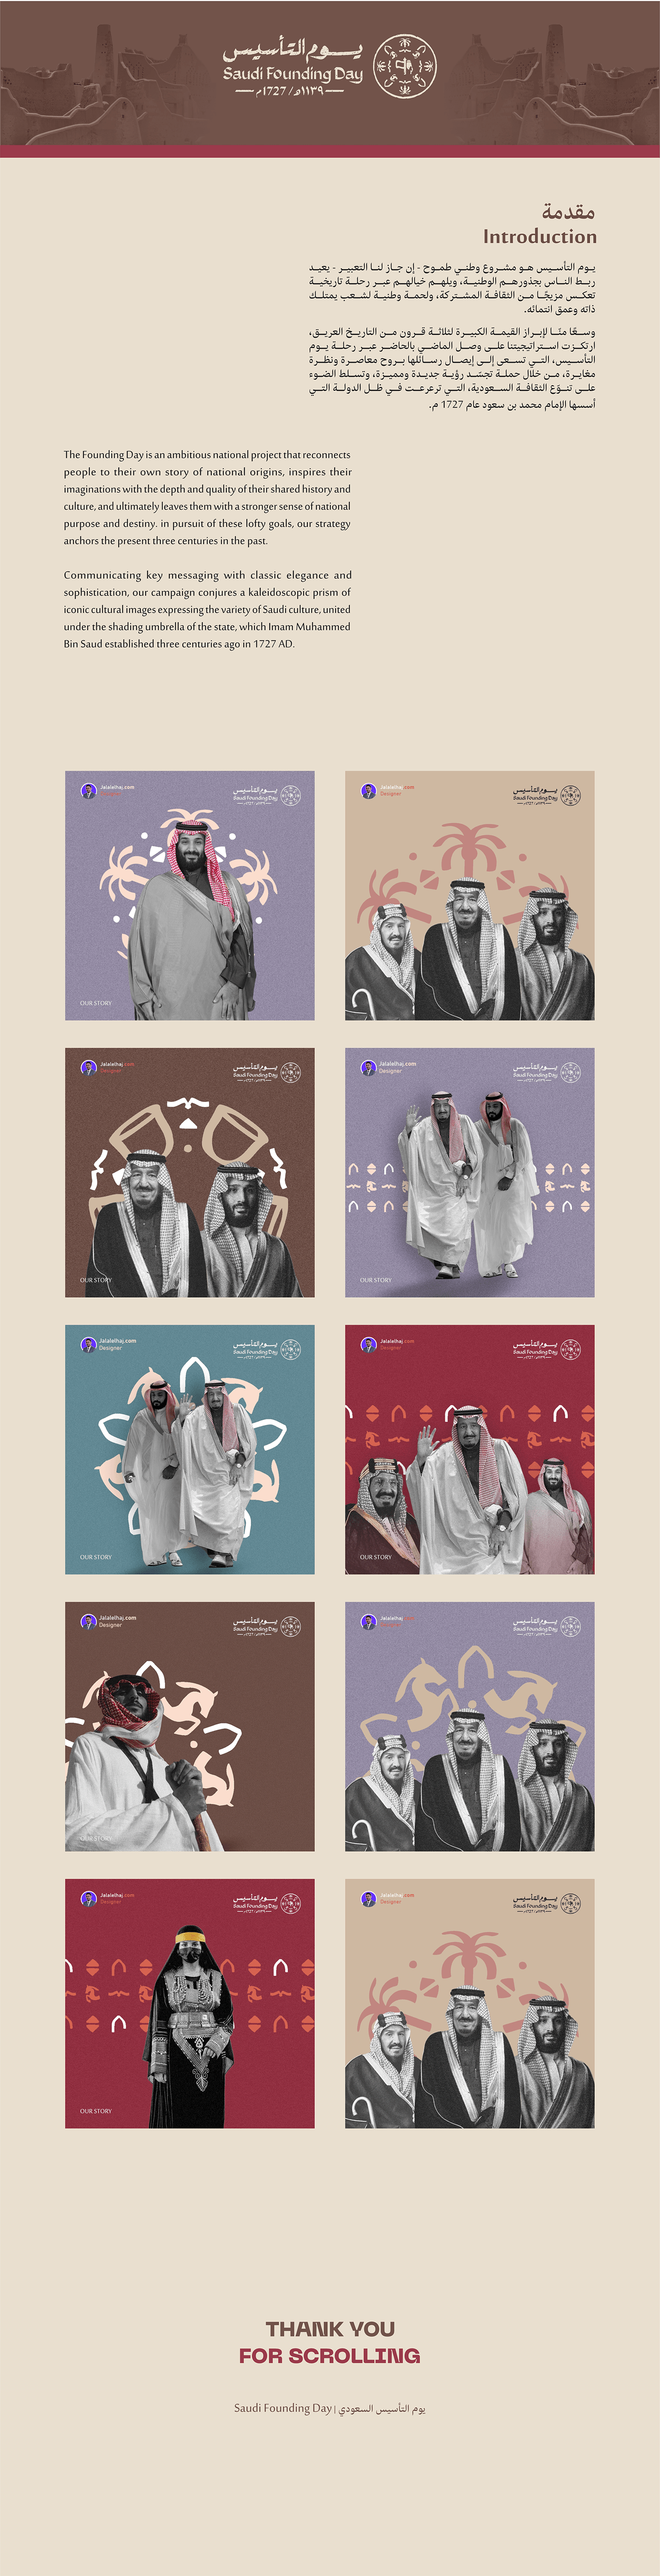 Founding Day يوم التأسيس السعودي السعودية Social media post Graphic Designer marketing   Socialmedia يوم التأسيس يوم بدينا